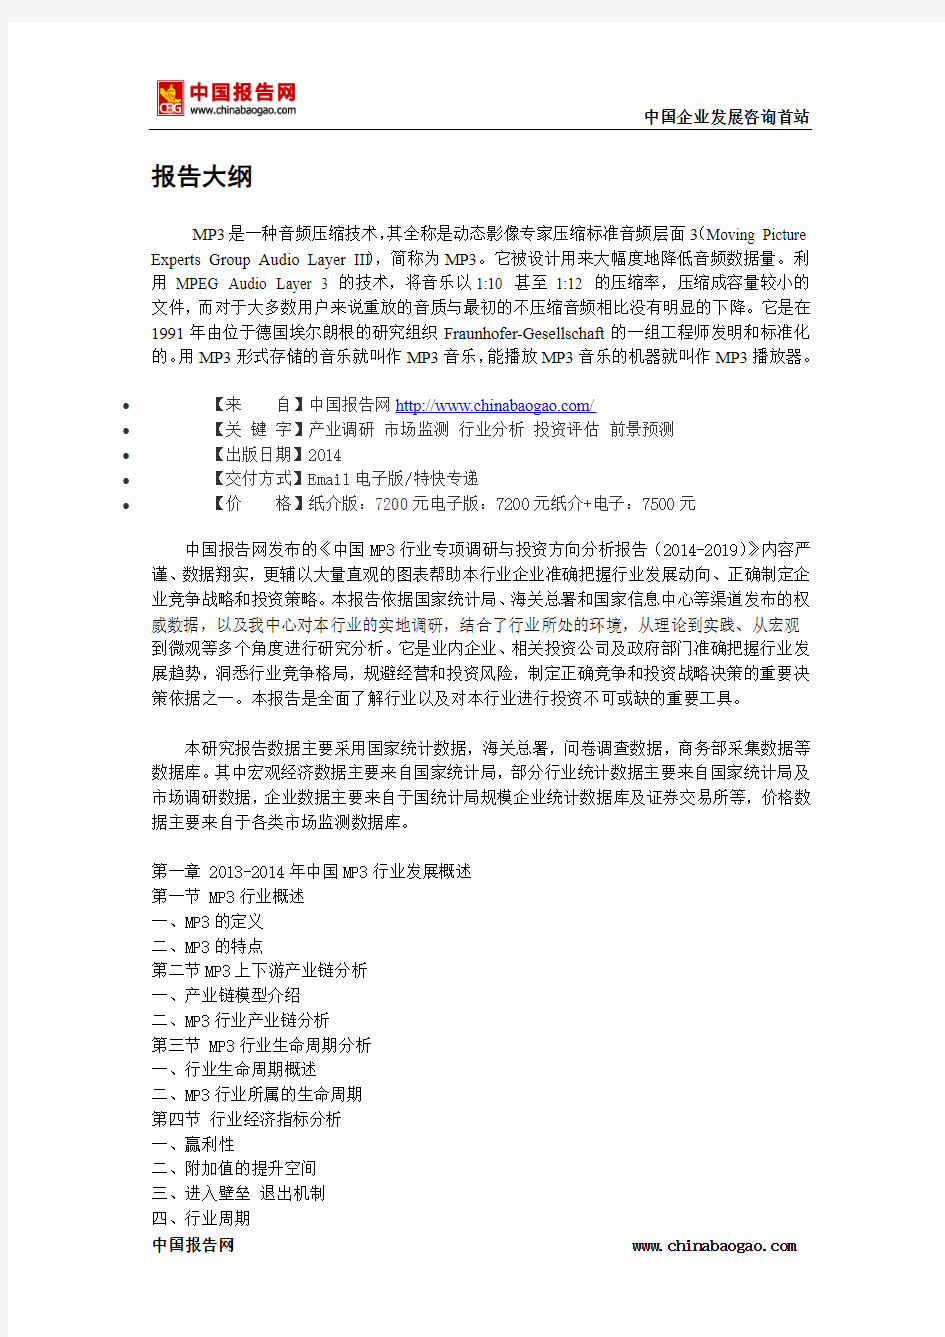 中国MP3行业专项调研与投资方向分析报告(2014-2019)